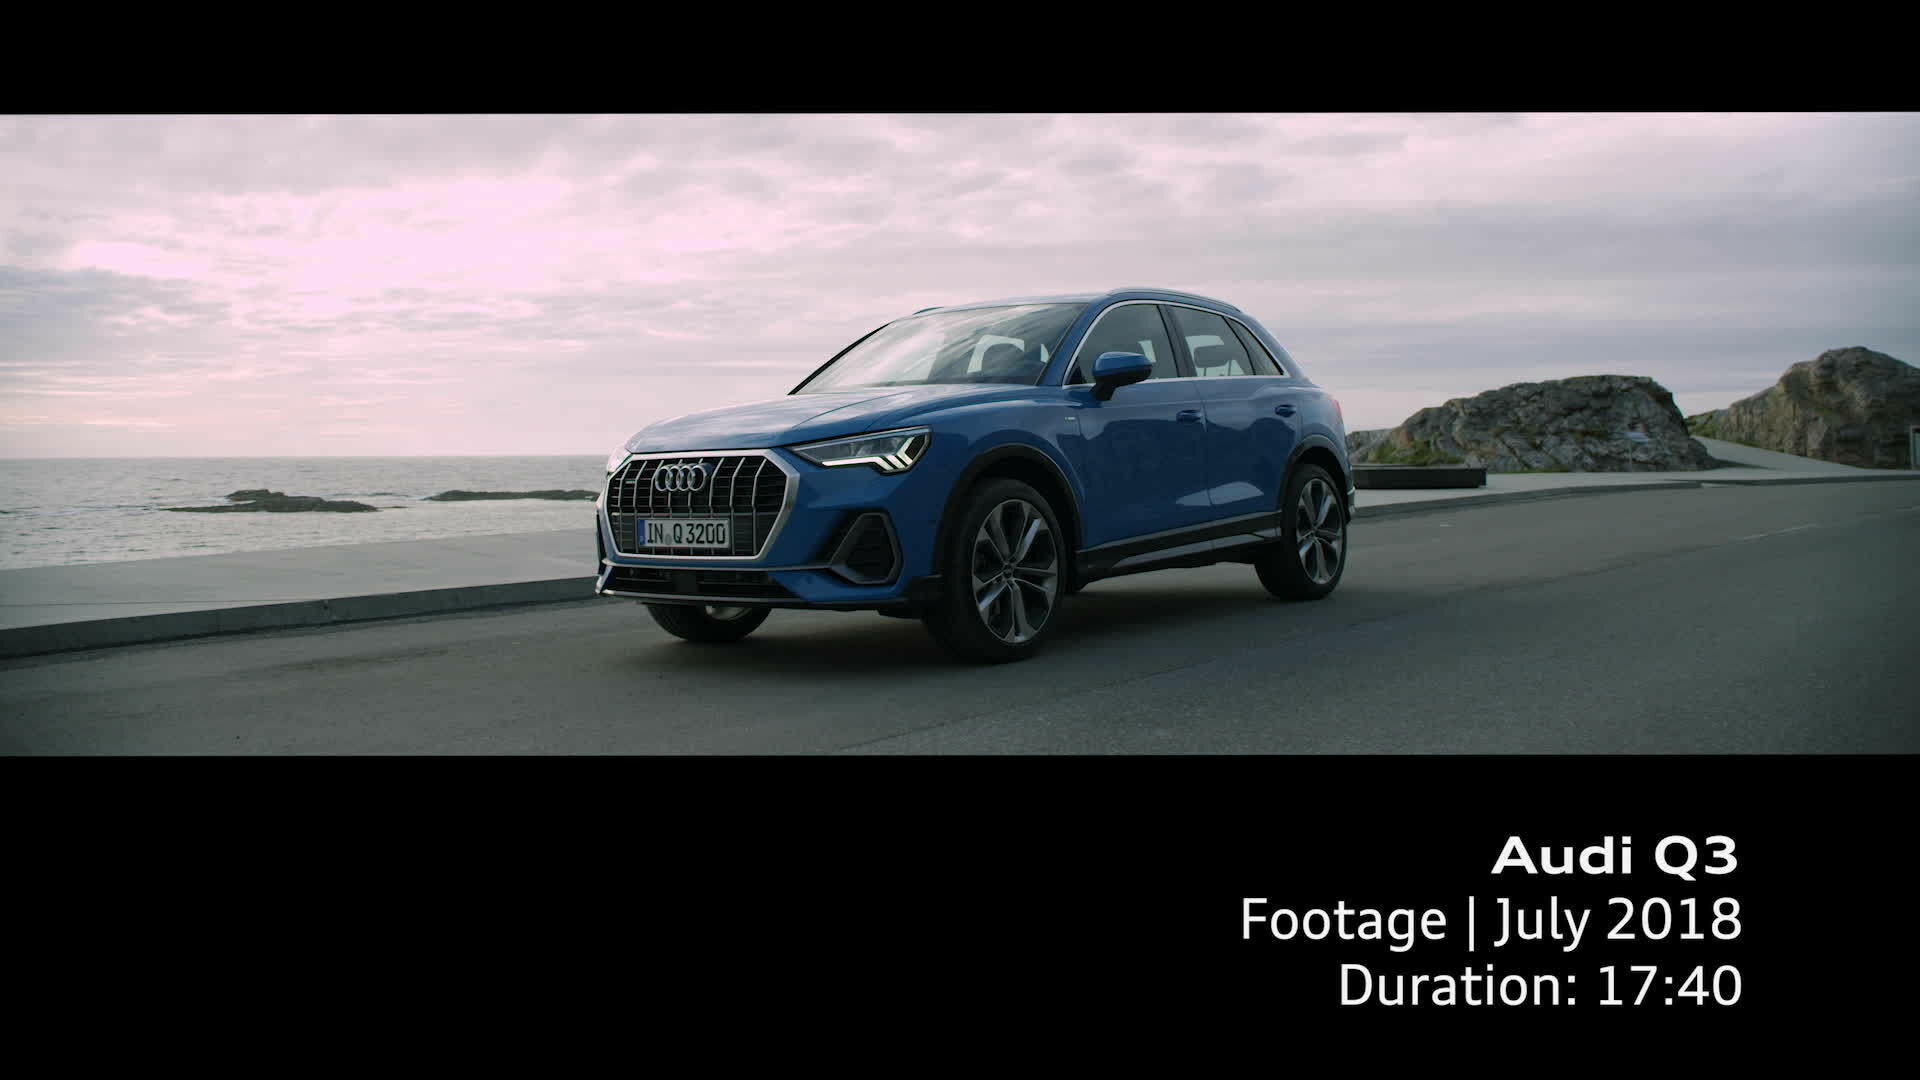 Audi Q3 Footage 2018